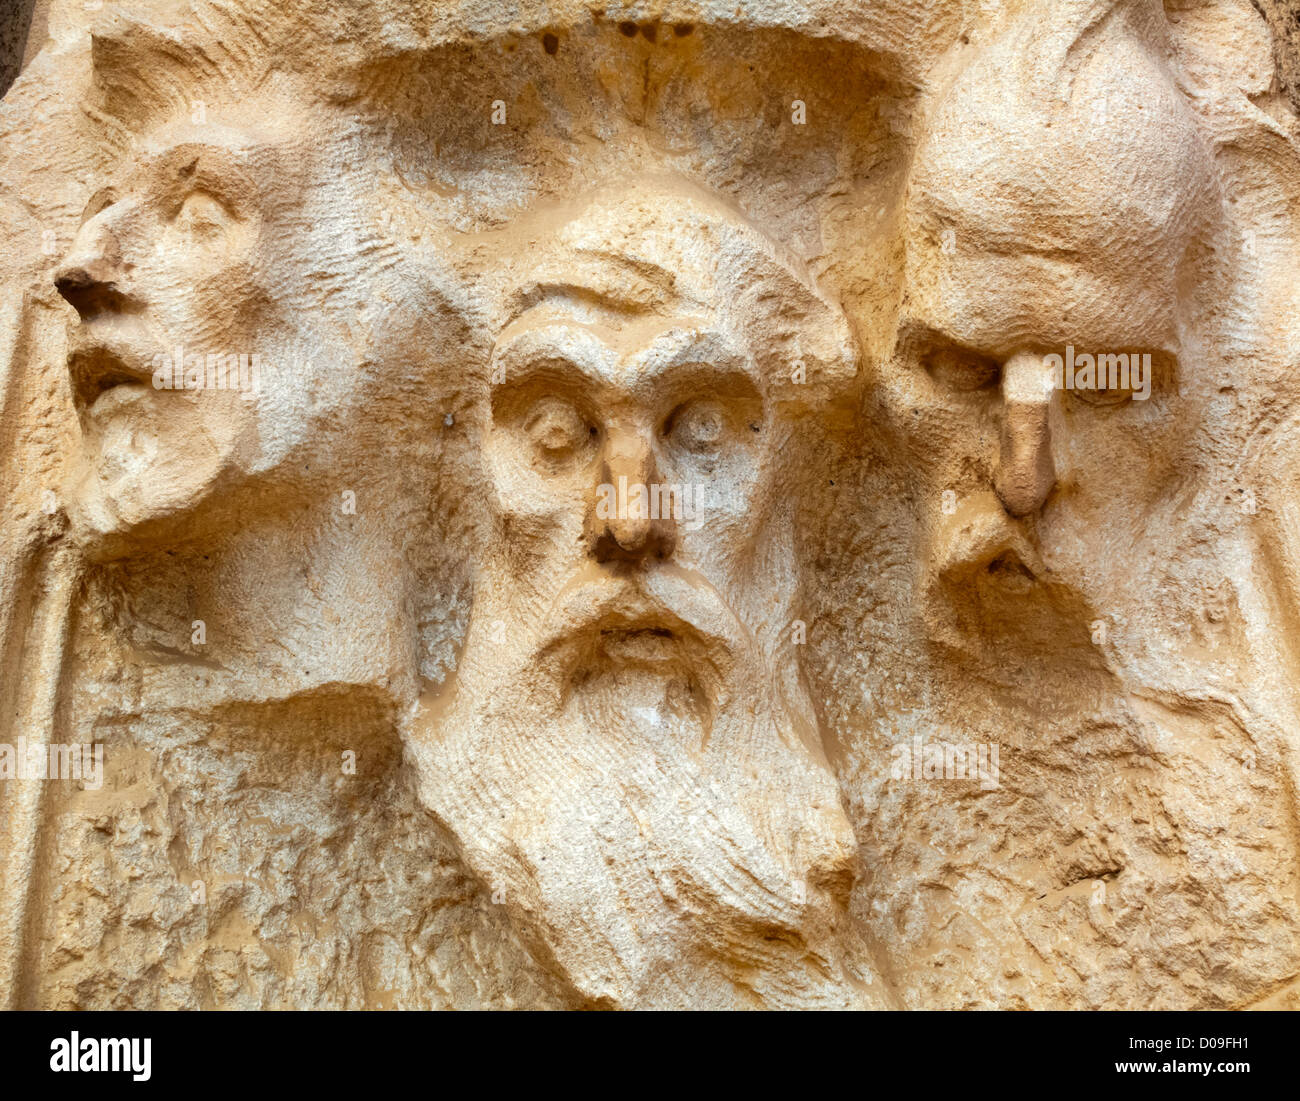 Faces of carved male figures in stone outside Tibidabo basilica church Temple Expiatori del Sagrat Cor Barcelona Catalonia Spain Stock Photo